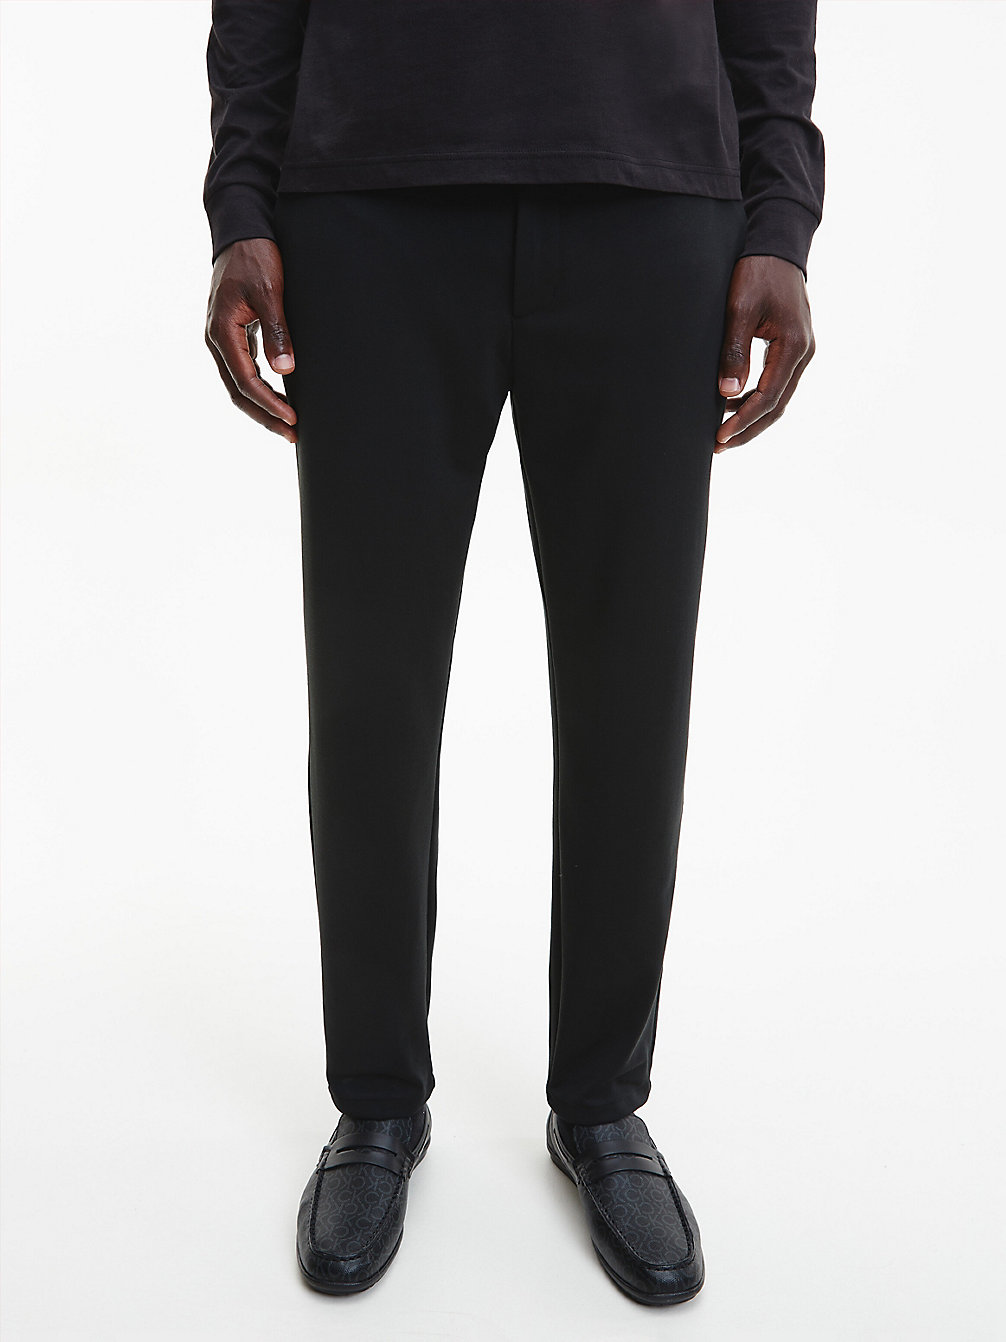 Pantalon Fuselé En Polyester Recyclé > CK BLACK > undefined hommes > Calvin Klein